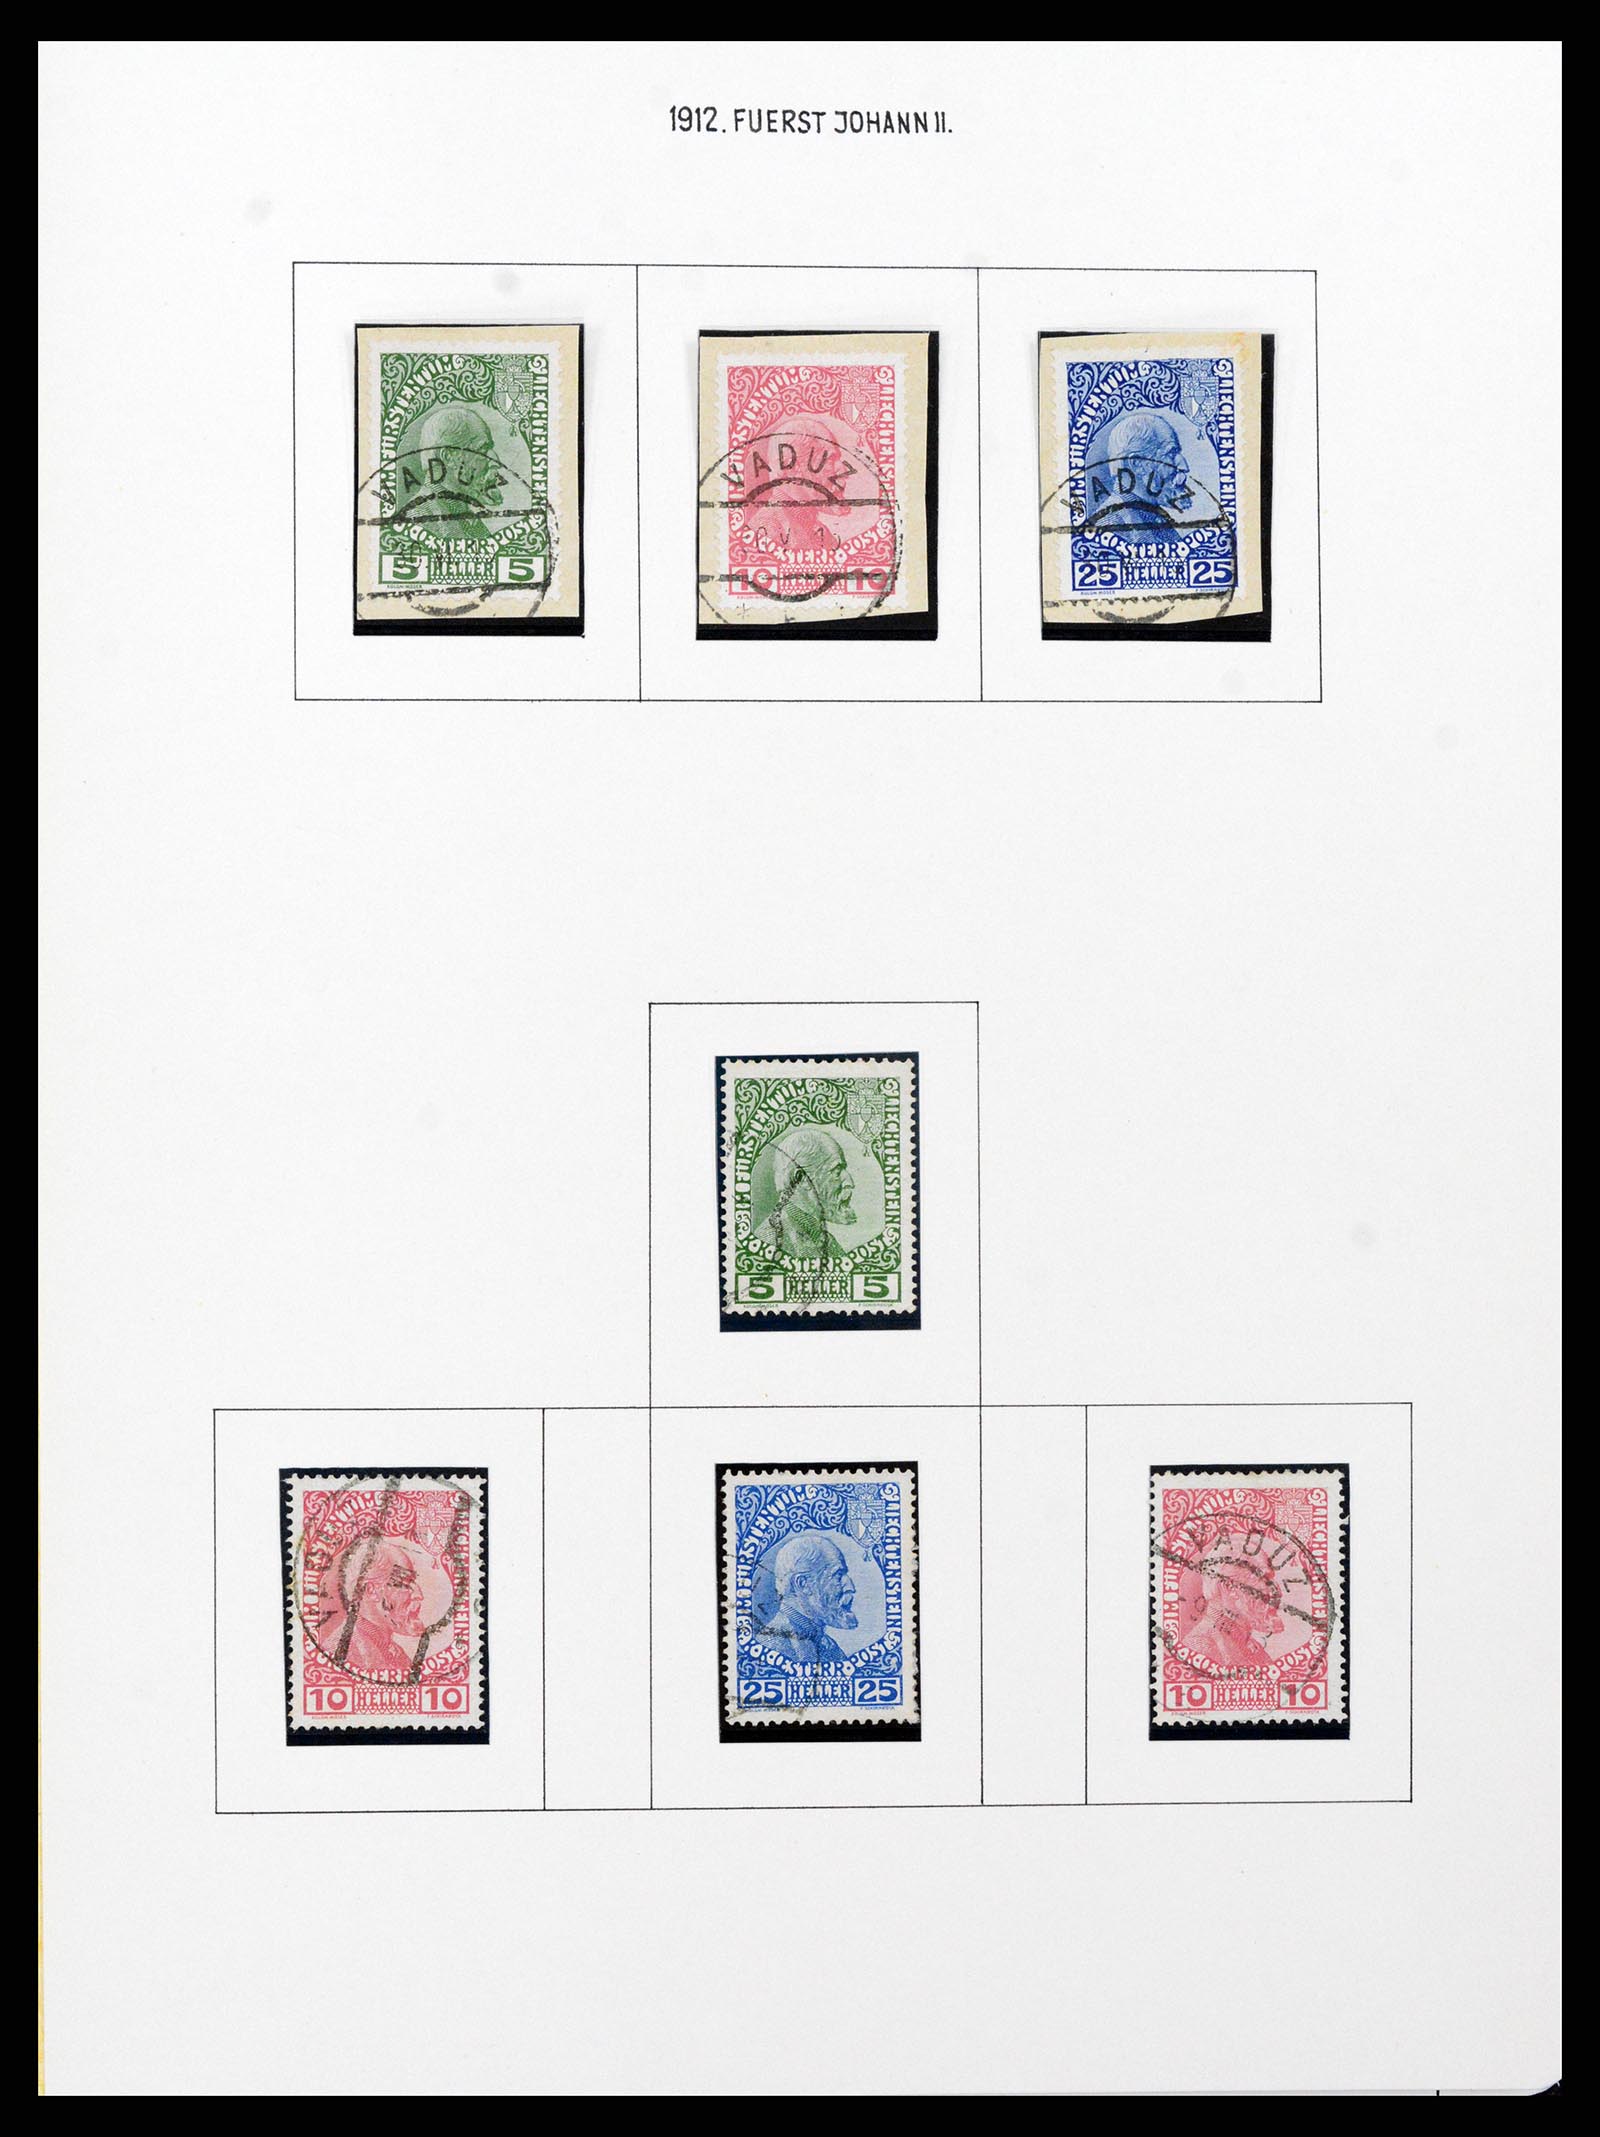 37150 0003 - Stamp collection 37150 Liechtenstein supercollection 1912-1962.